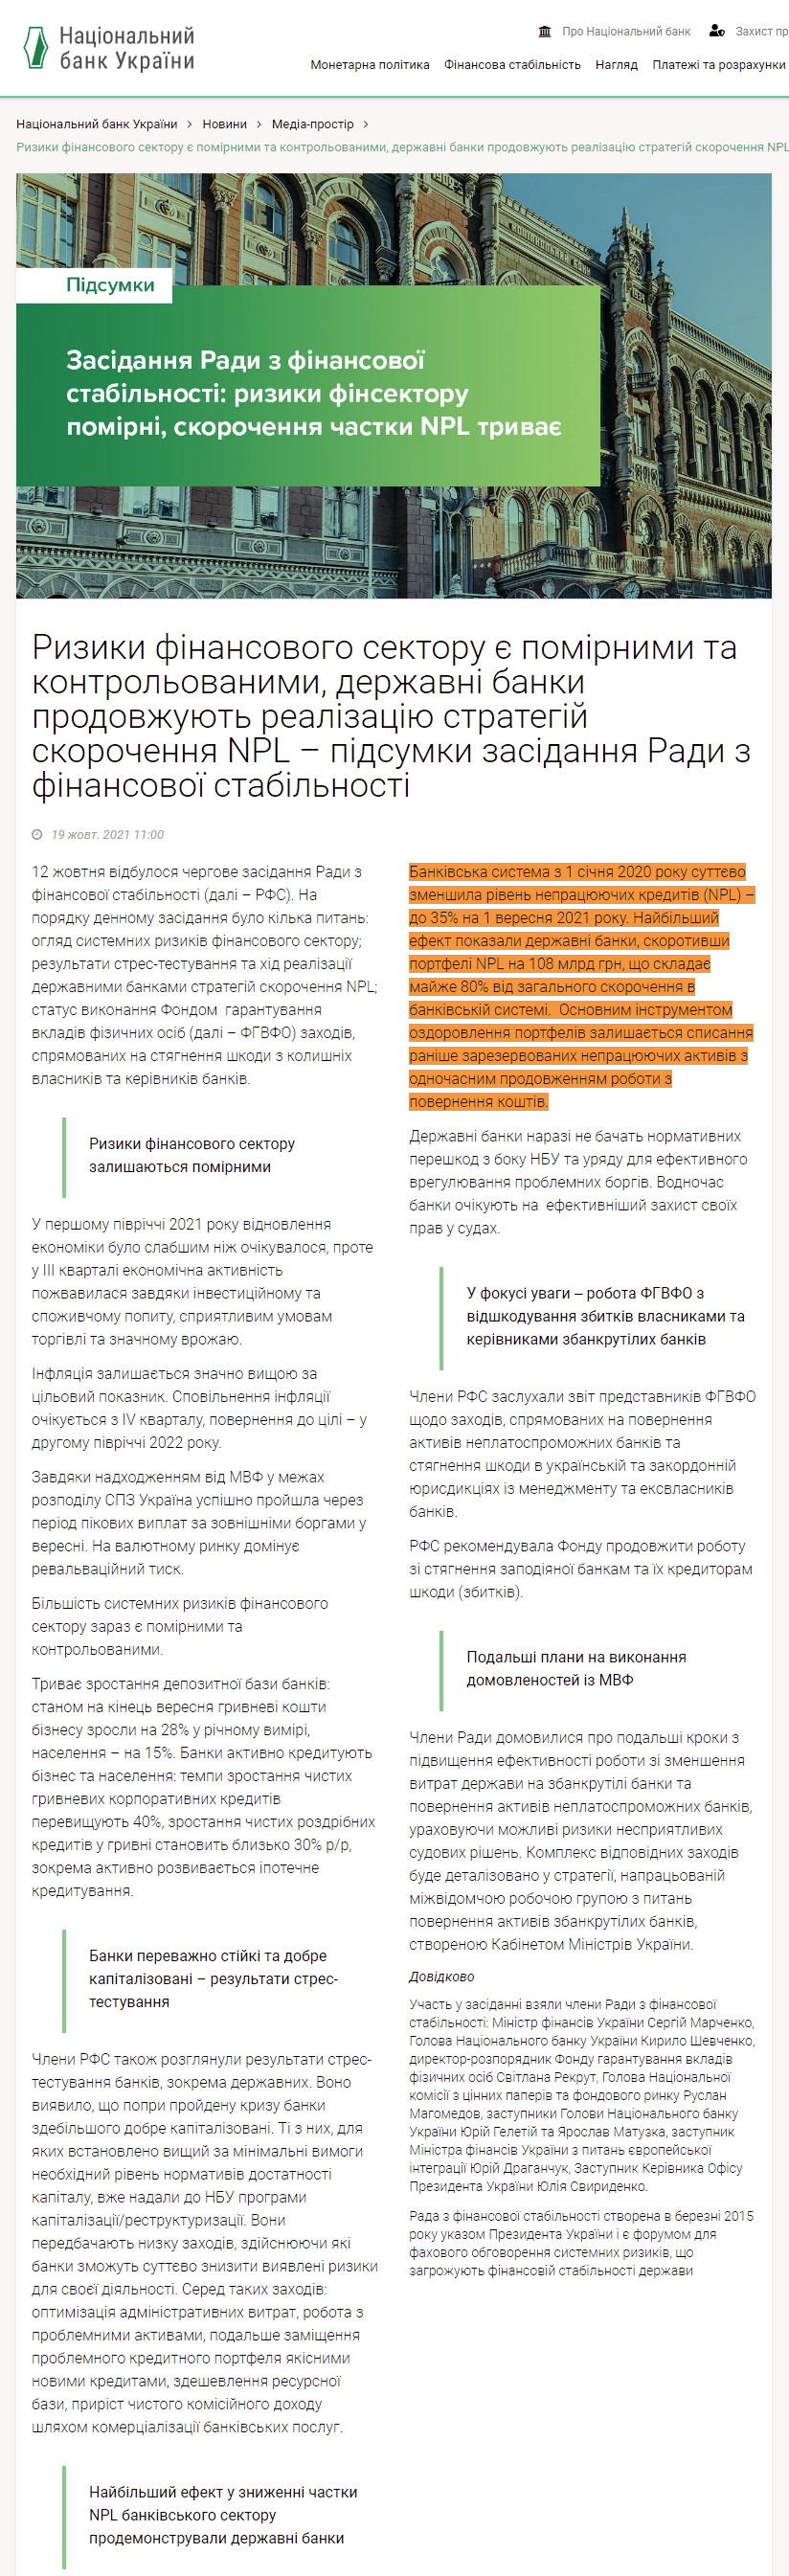 https://bank.gov.ua/ua/news/all/riziki-finansovogo-sektoru-ye-pomirnimi-ta-kontrolovanimi-derjavni-banki-prodovjuyut-realizatsiyu-strategiy-skorochennya-npl--pidsumki-zasidannya-radi-z-finansovoyi-stabilnosti